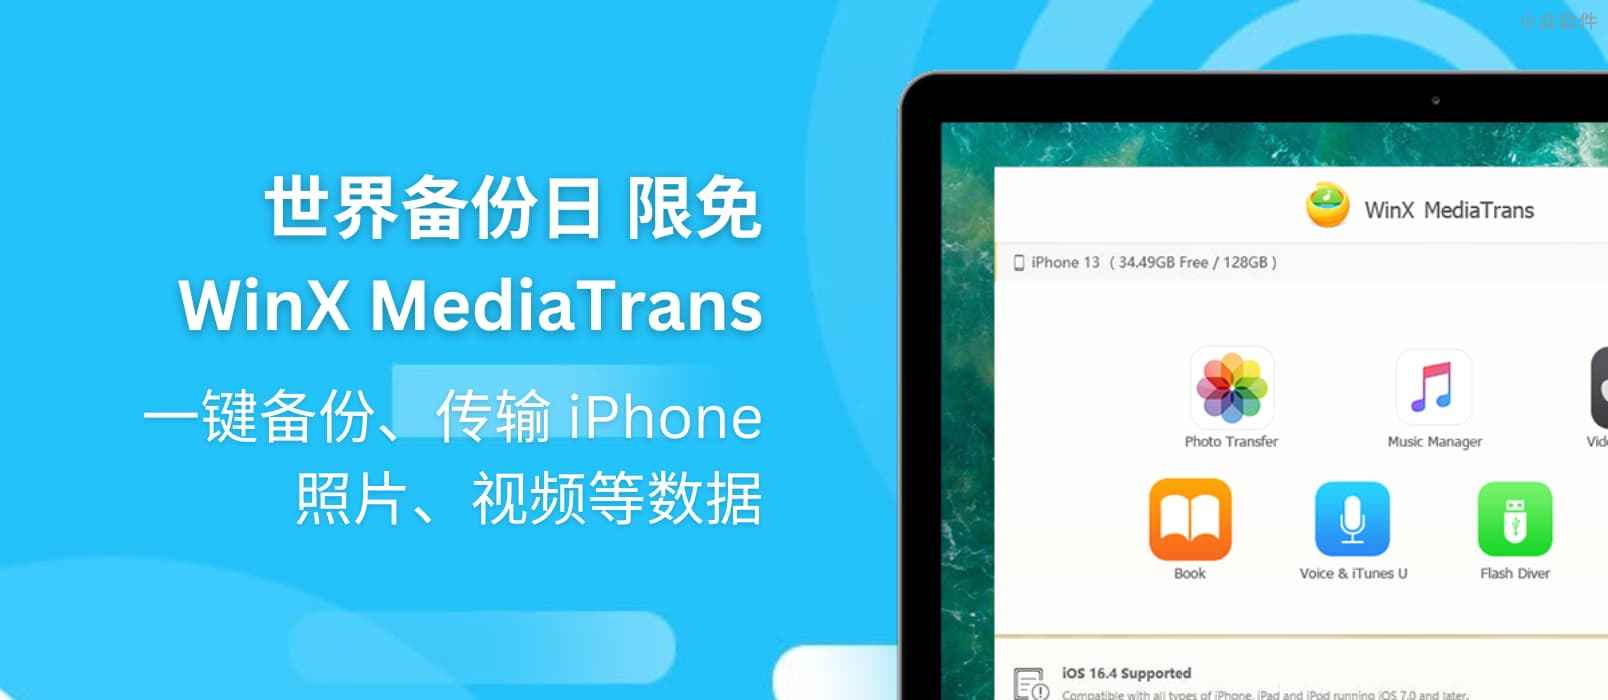 世界备份日 WinX MediaTrans 限免：一键备份、传输 iPhone 照片、视频等数据